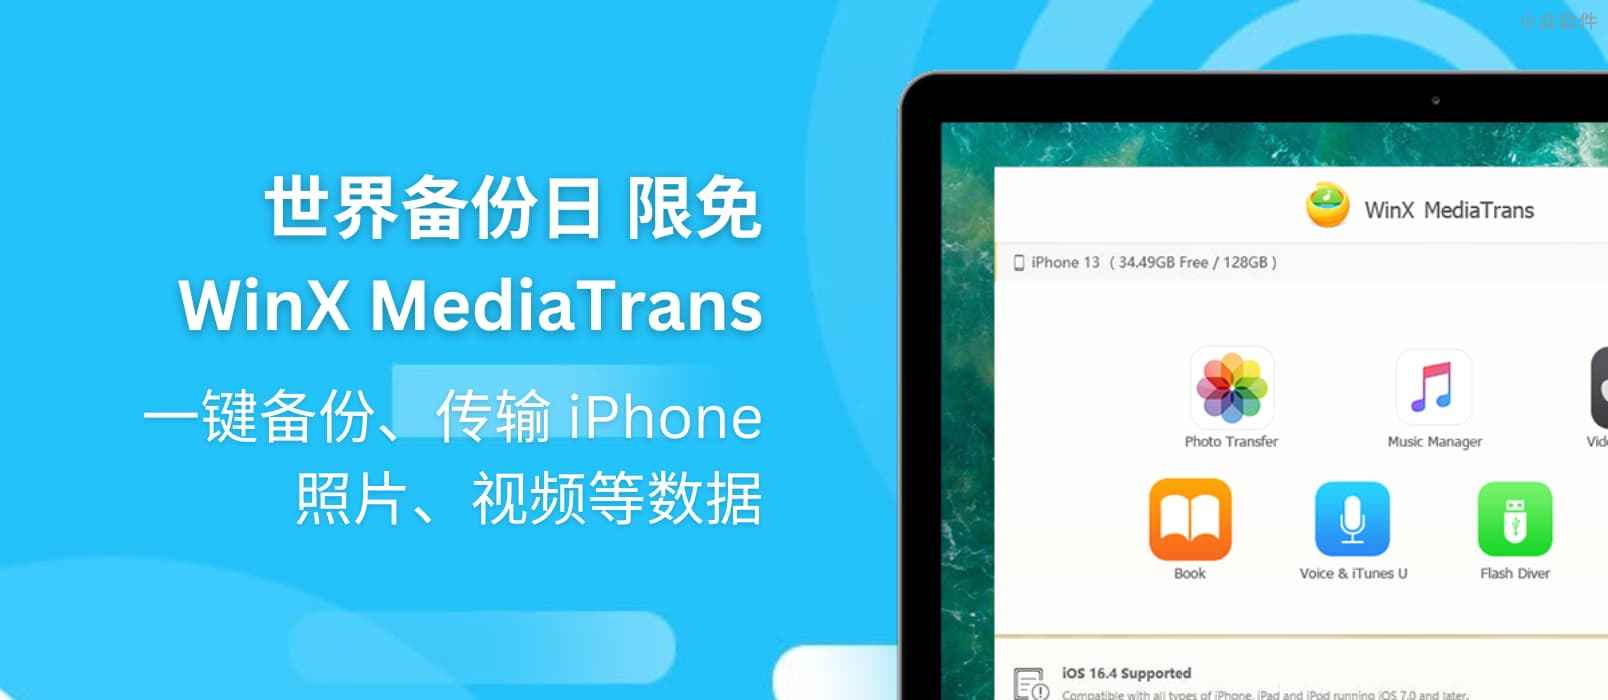 世界备份日 WinX MediaTrans 限免：一键备份、传输 iPhone 照片、视频等数据